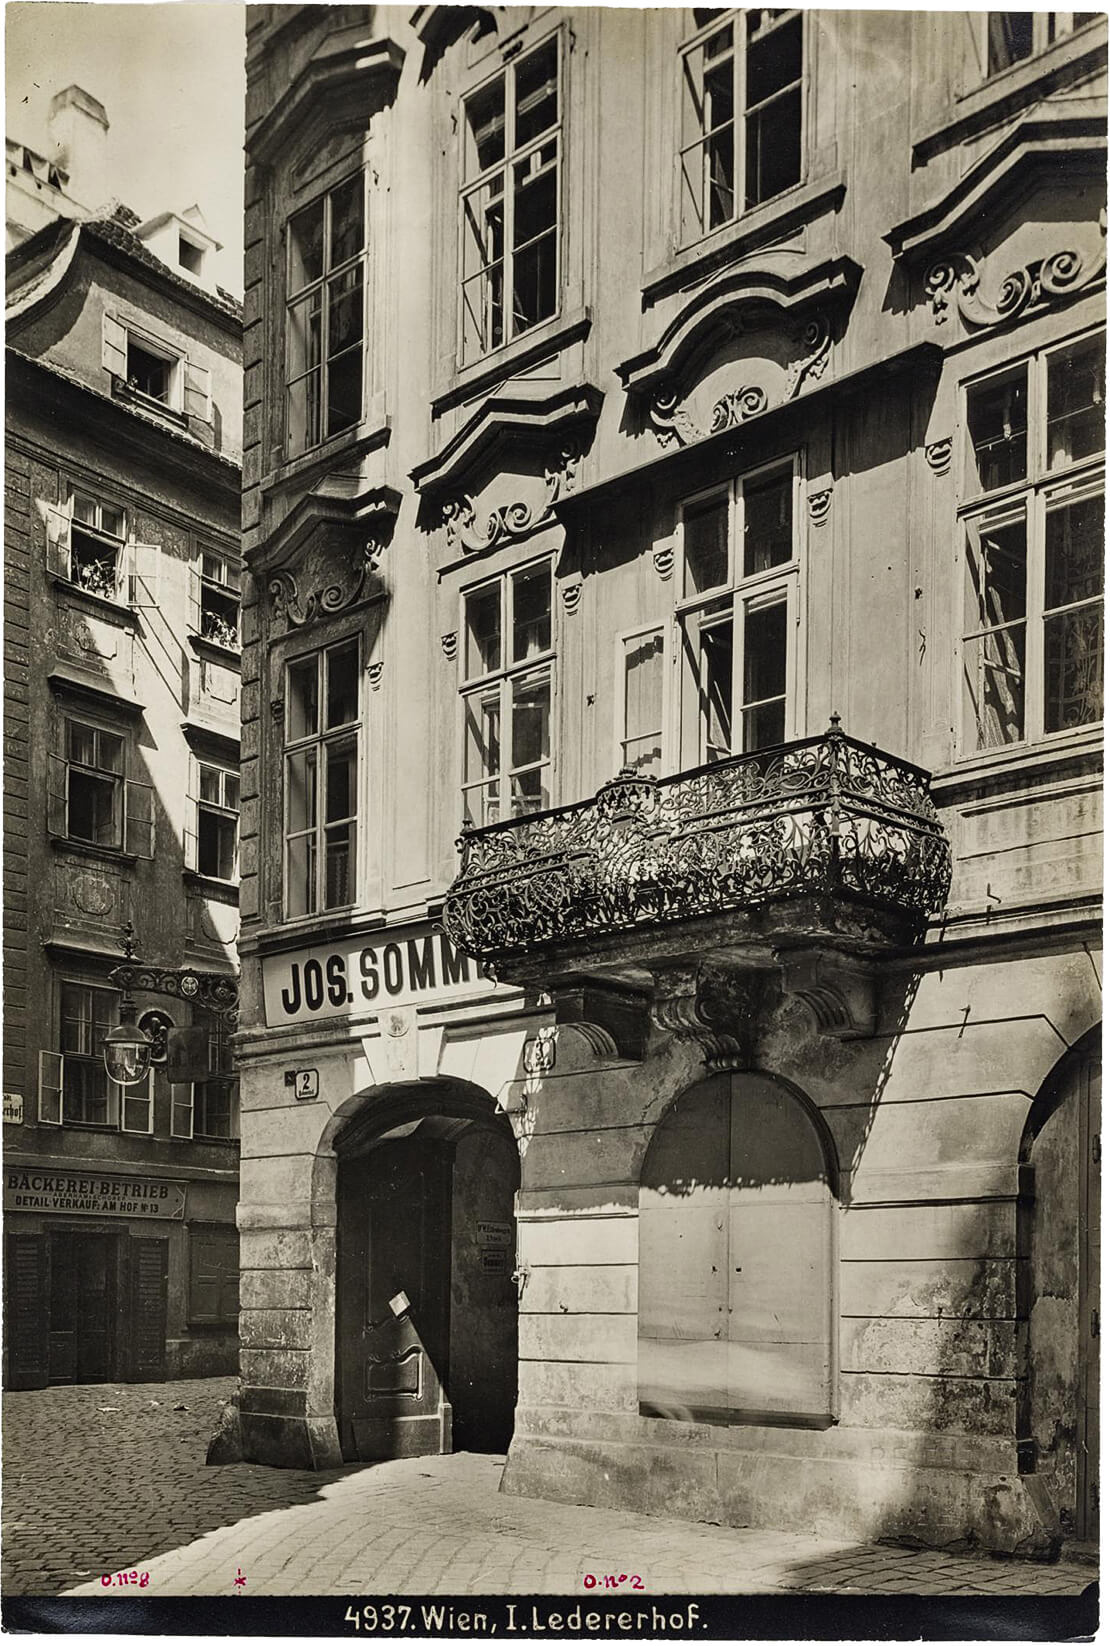 Wien 1., Ledererhof 2, Barockes Bürgerhaus, Fotografie von Bruno Reiffenstein, um 1900, Wien Museum 